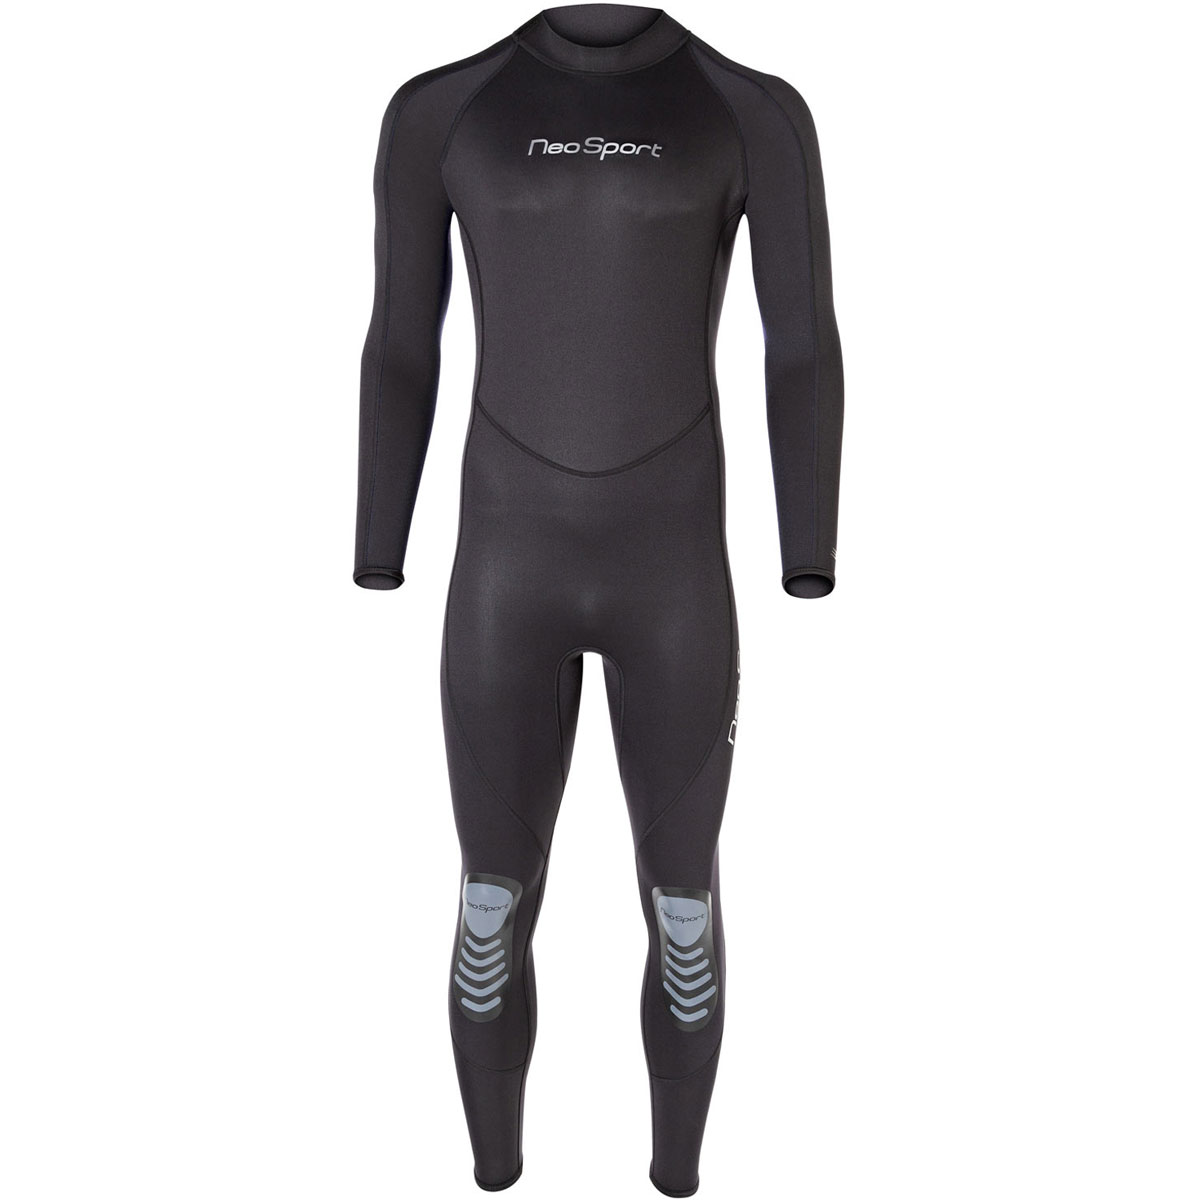 The best scuba wetsuit 5mm